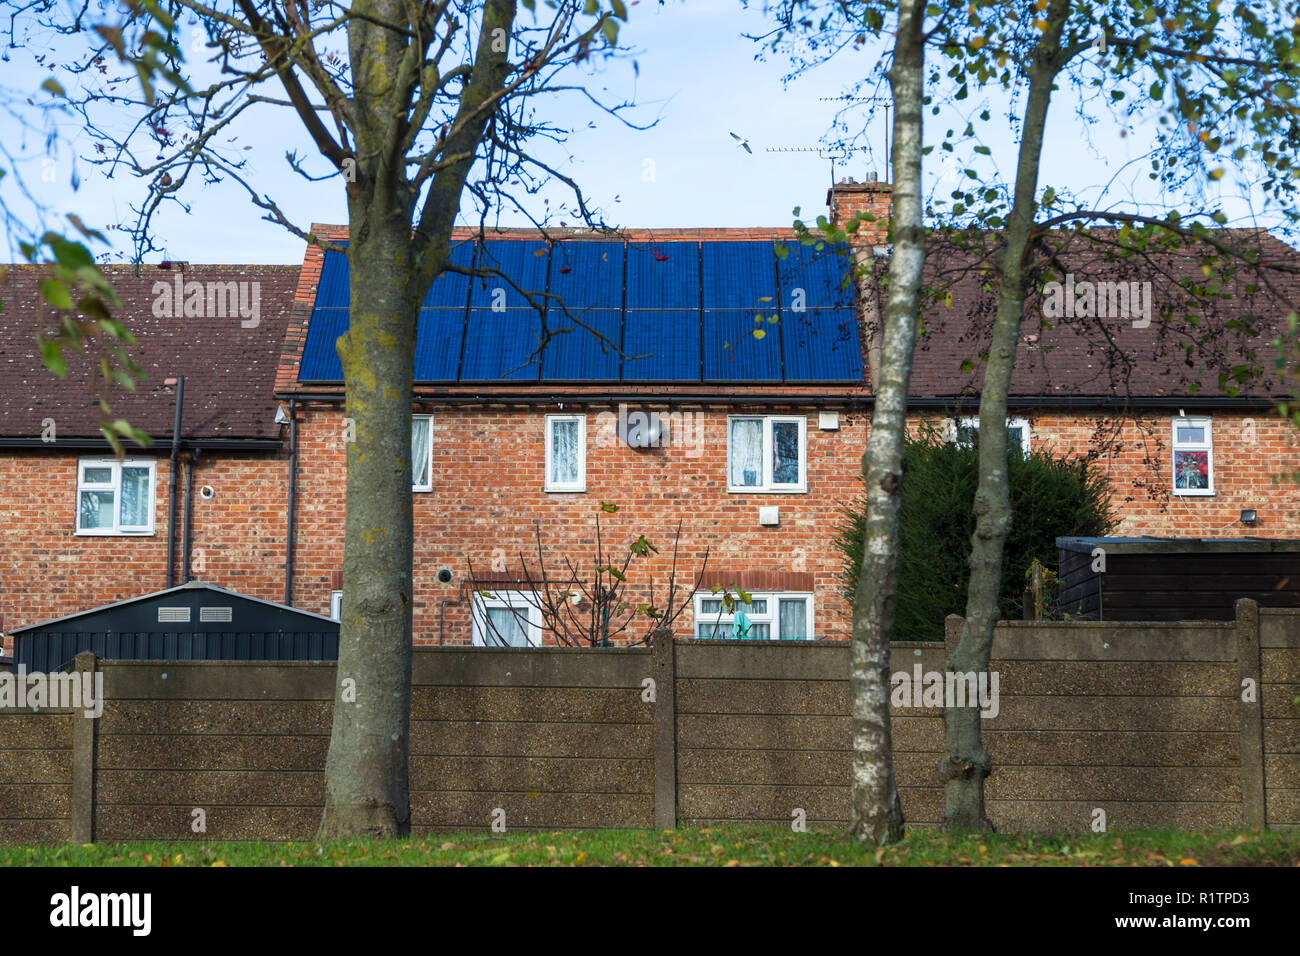 Maison de brique, toiture recouverte de panneaux solaires, uk Banque D'Images